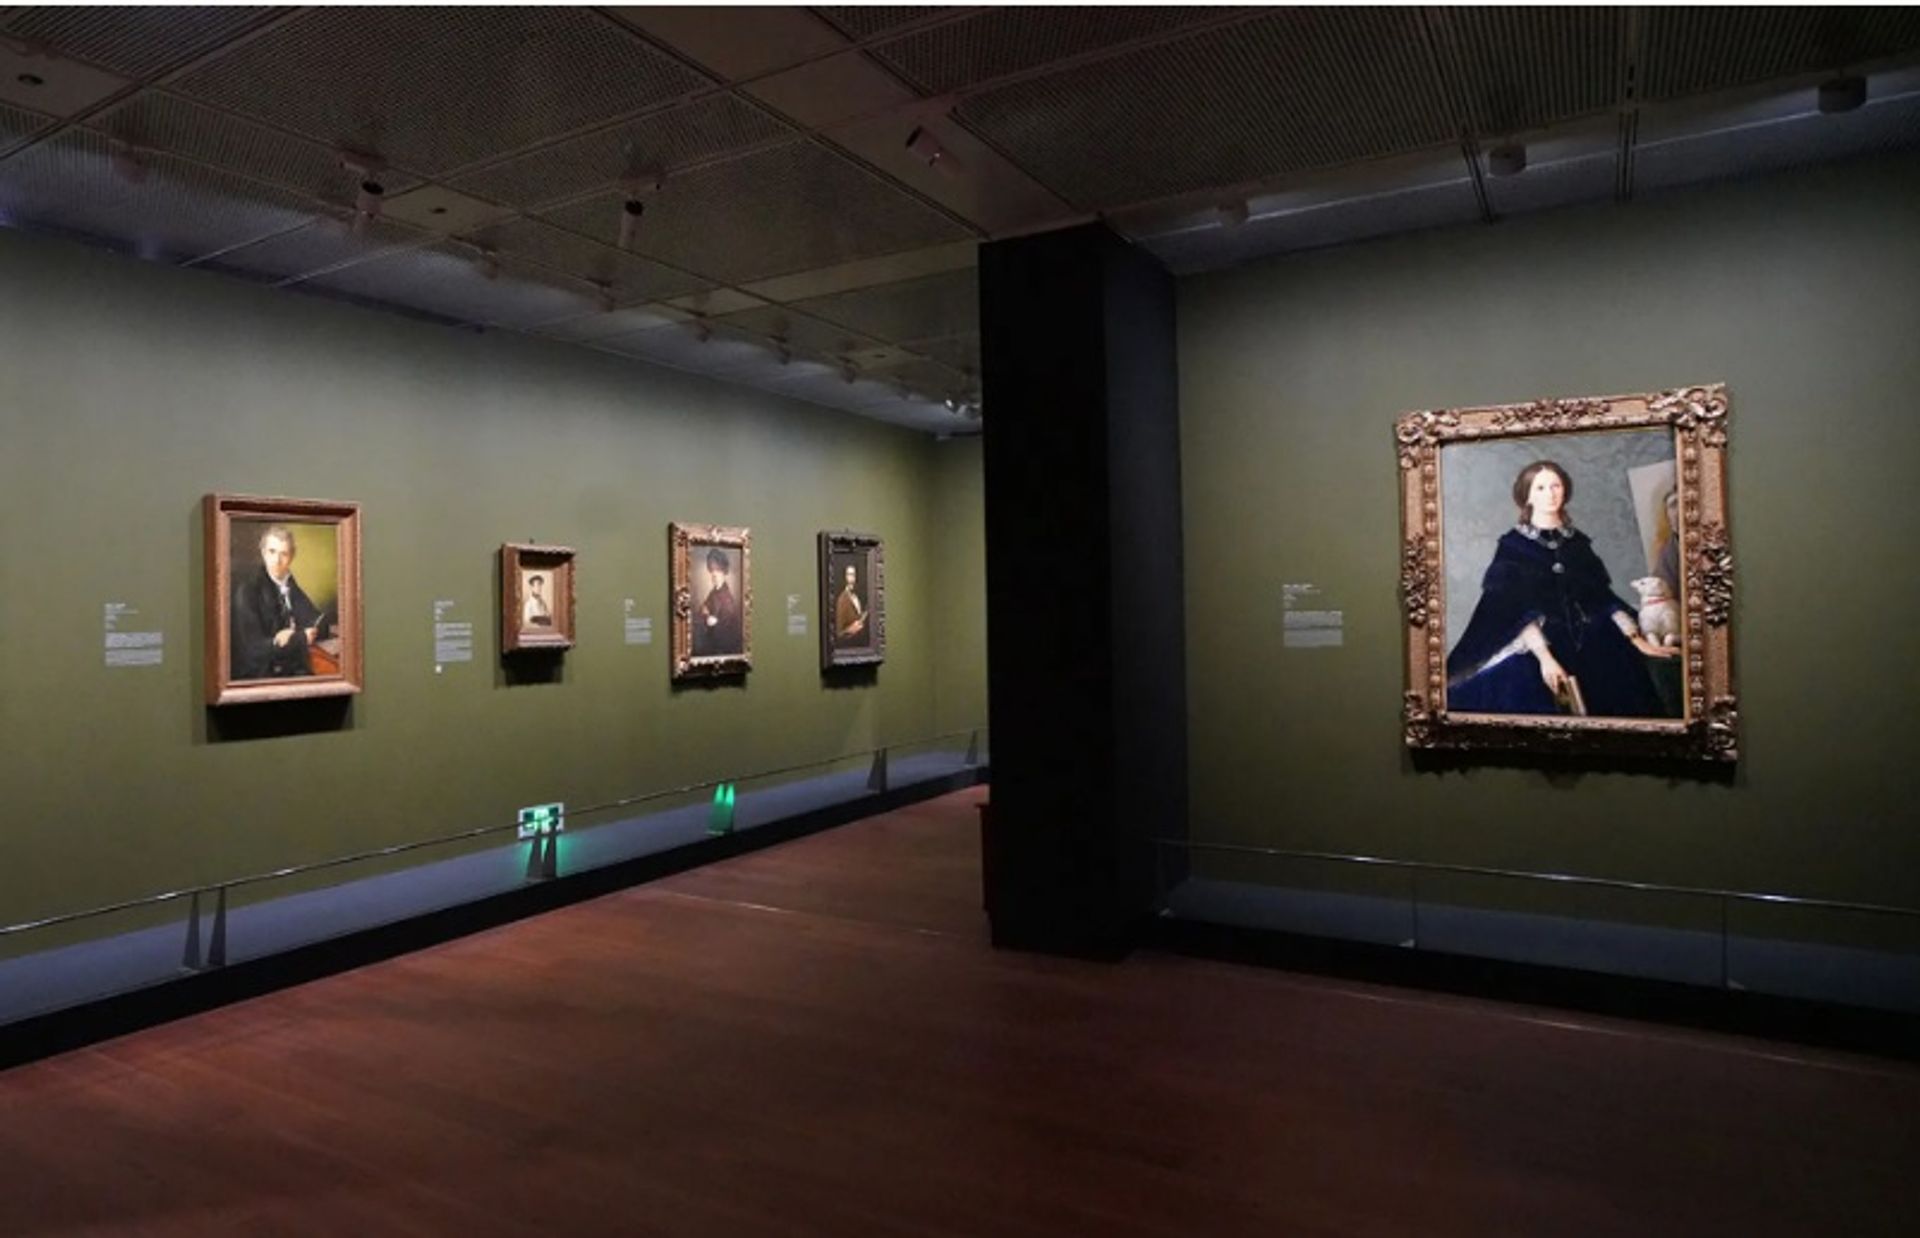 האופיצי השאיל דיוקנאות עצמיים של 48 אמנים, כולל יצירות של רפאל, ברניני, ולסקז, רמברנדט ורובנס, למוזיאון האמנות בונד וואן, בשנגחאי

גלריות אופיצי